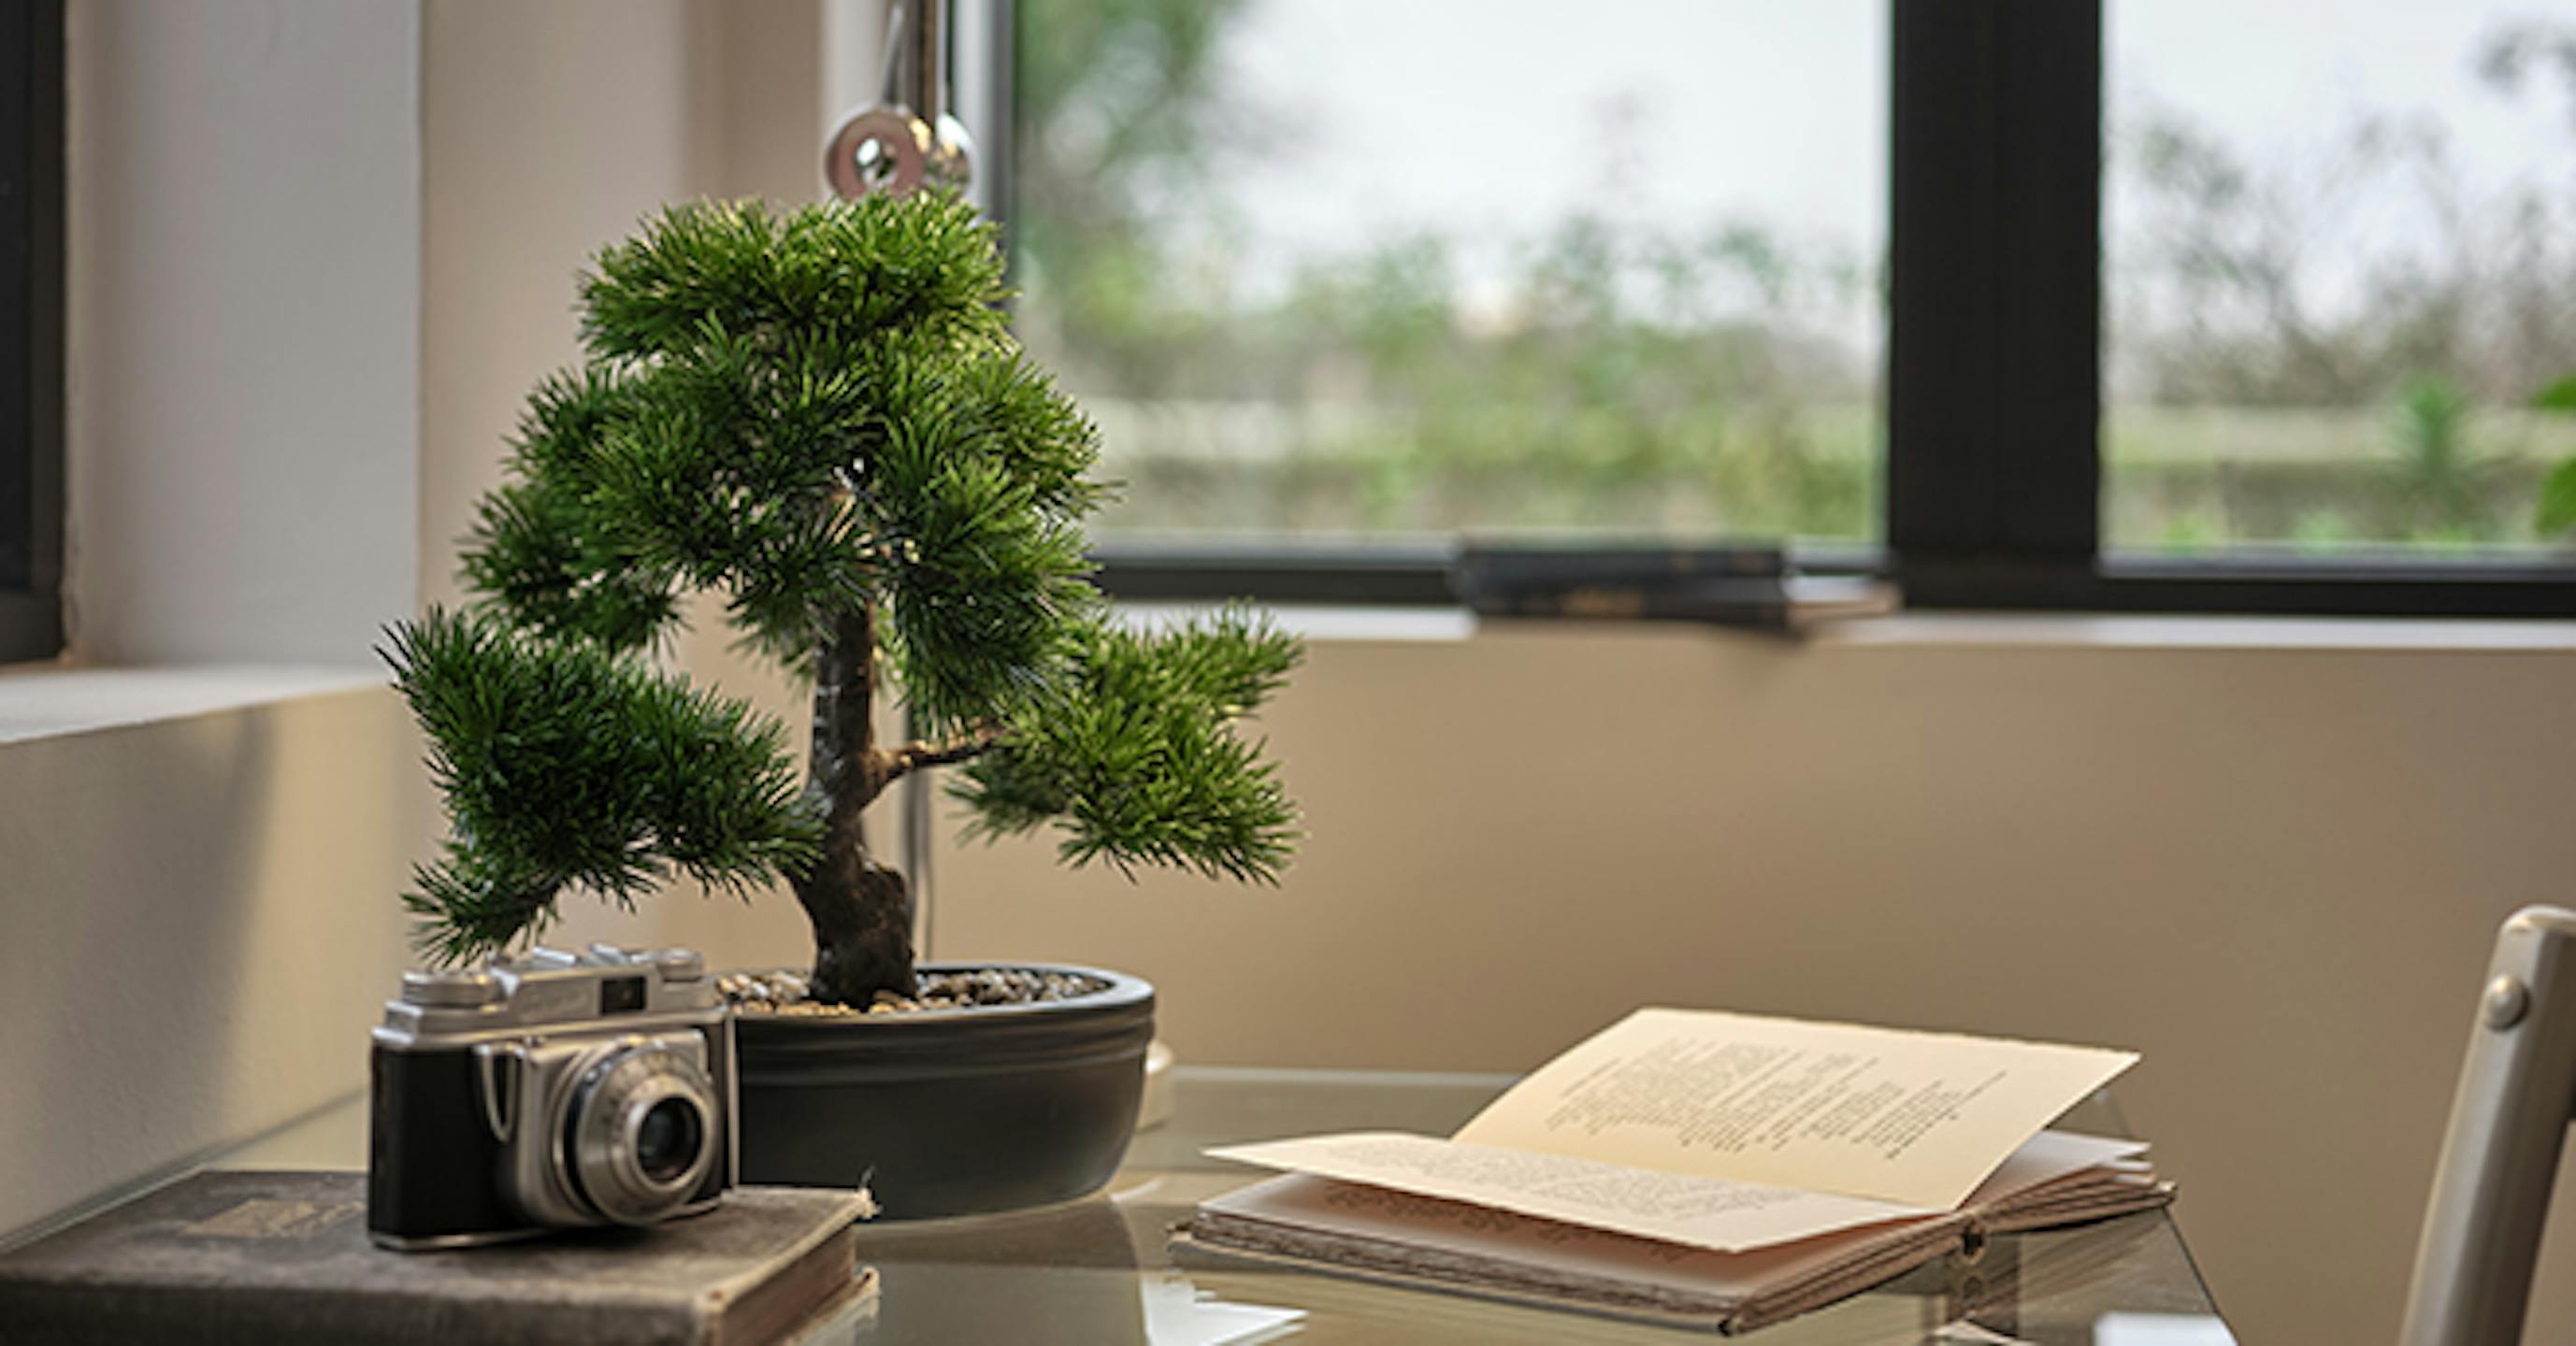 Artifiical bonsai plant - desktop faux plants